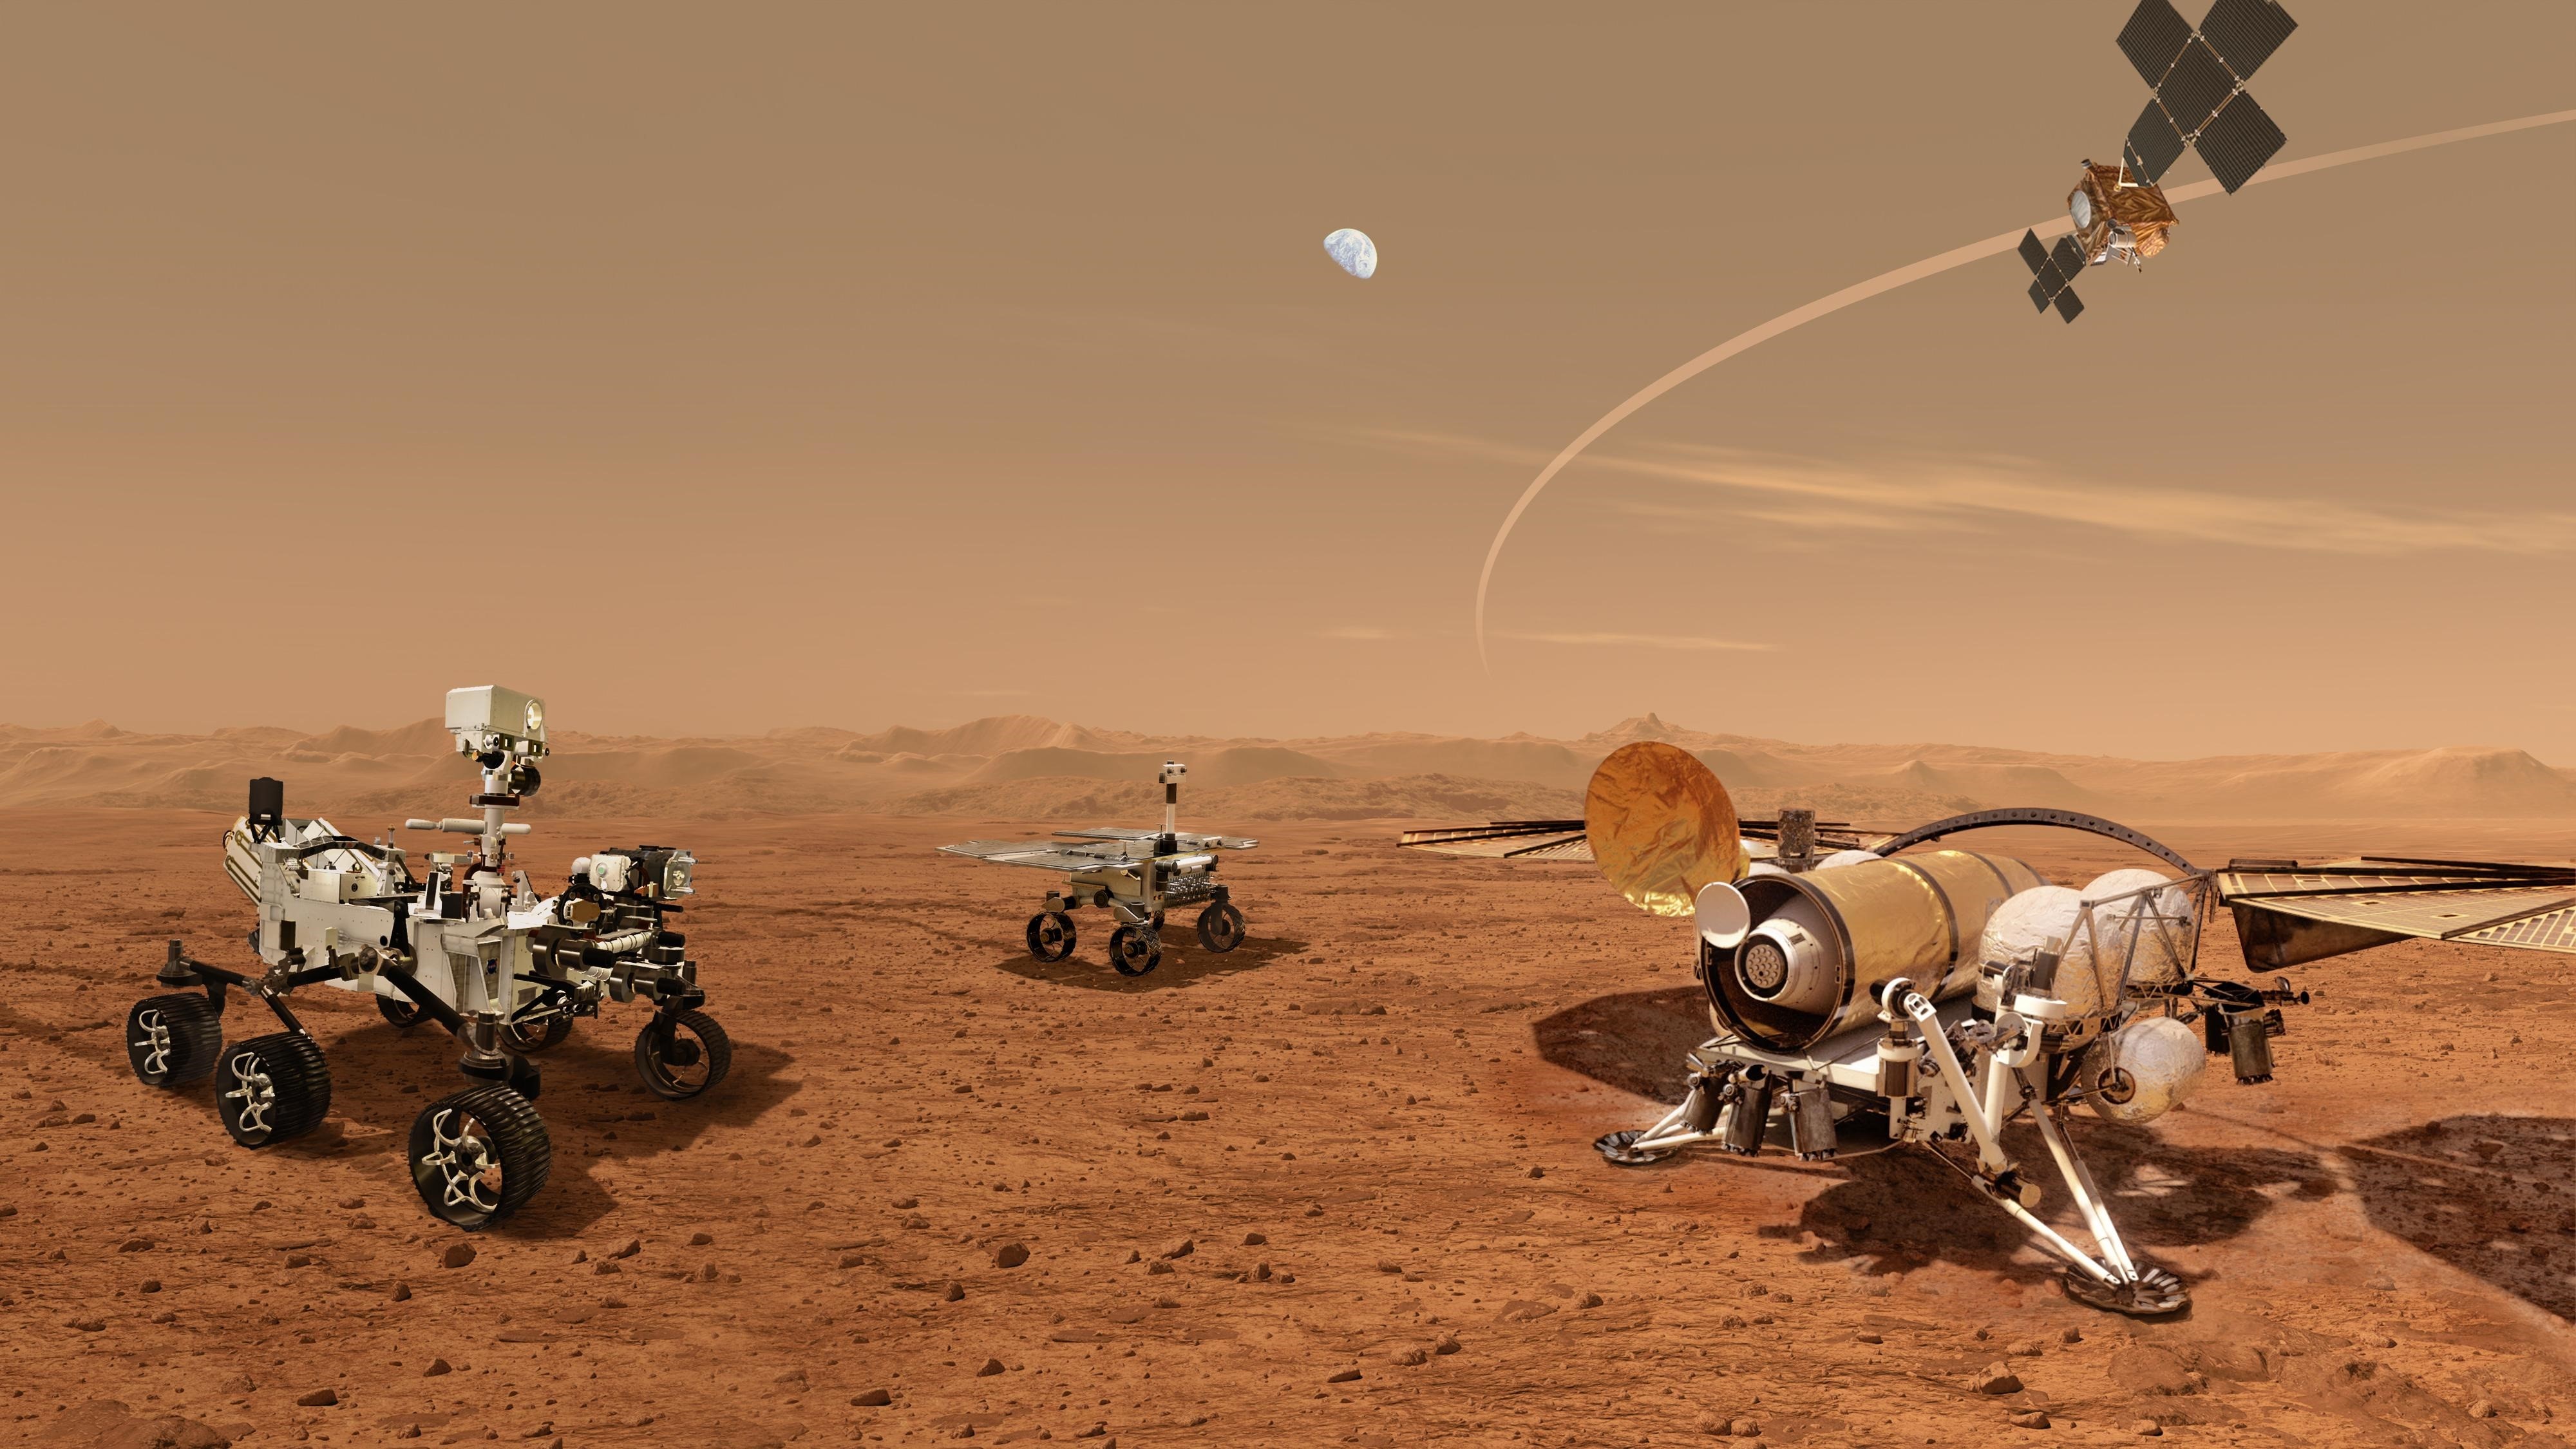 El 18 de febrero, el rover Perseverance de la NASA aterrizó en el planeta rojo iniciando una nueva era de exploración de Marte (Europa Press)
